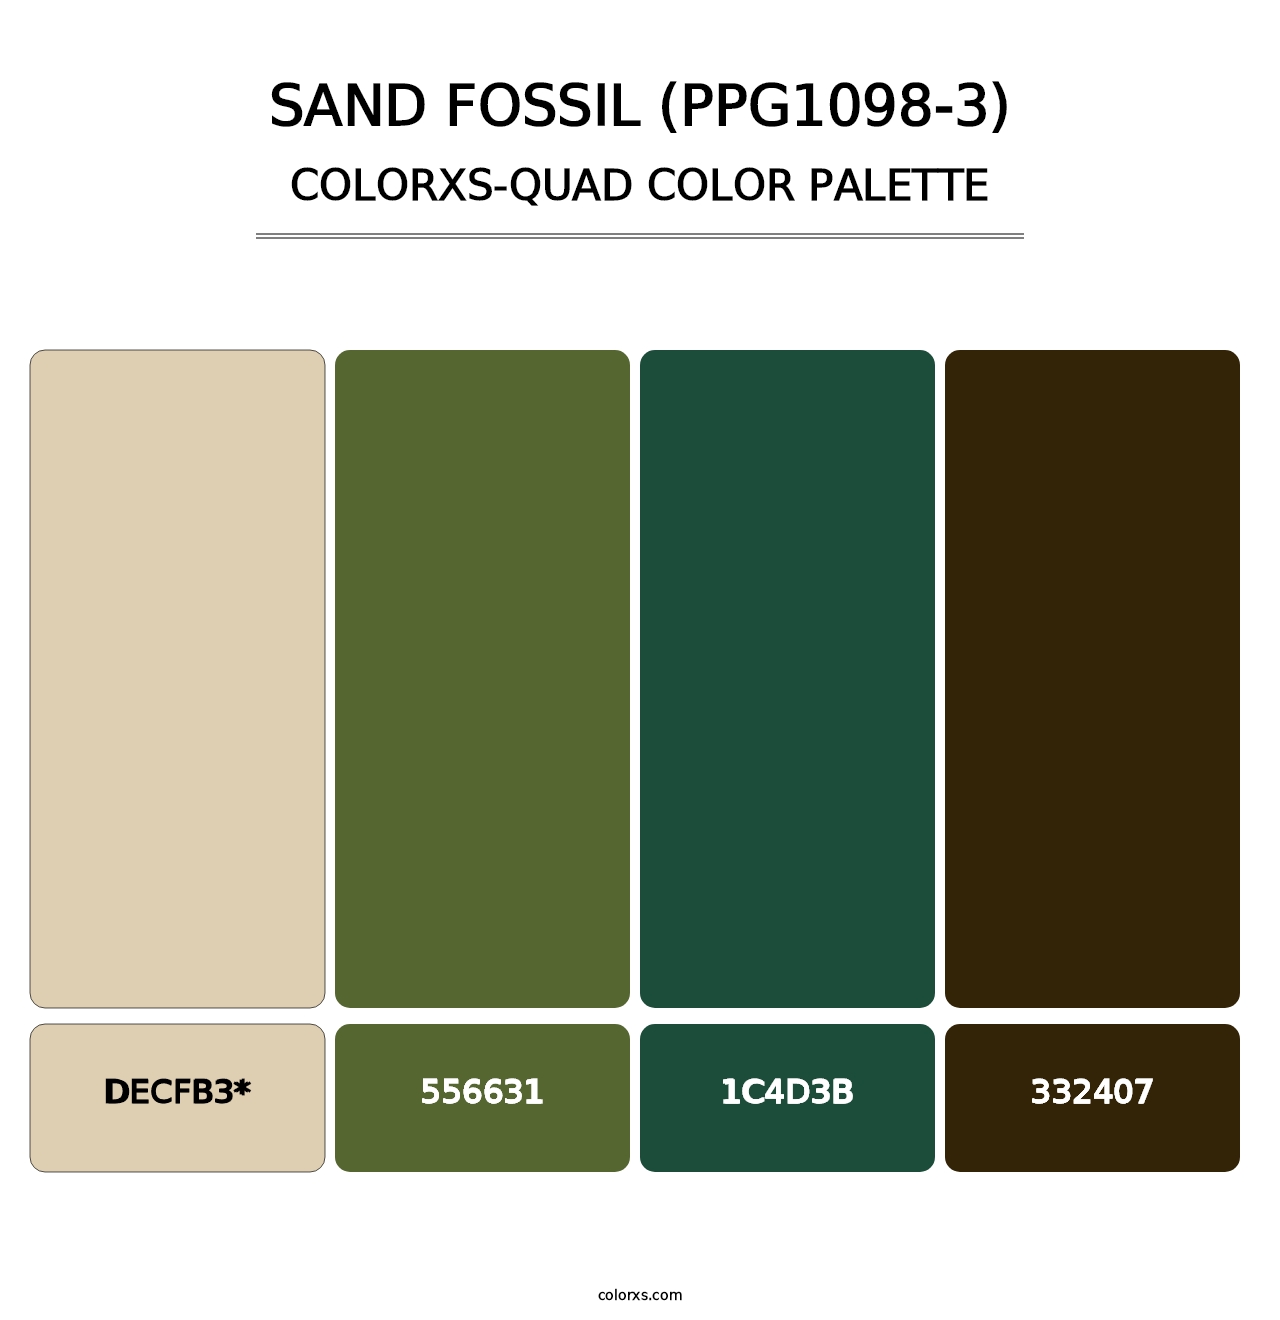 Sand Fossil (PPG1098-3) - Colorxs Quad Palette